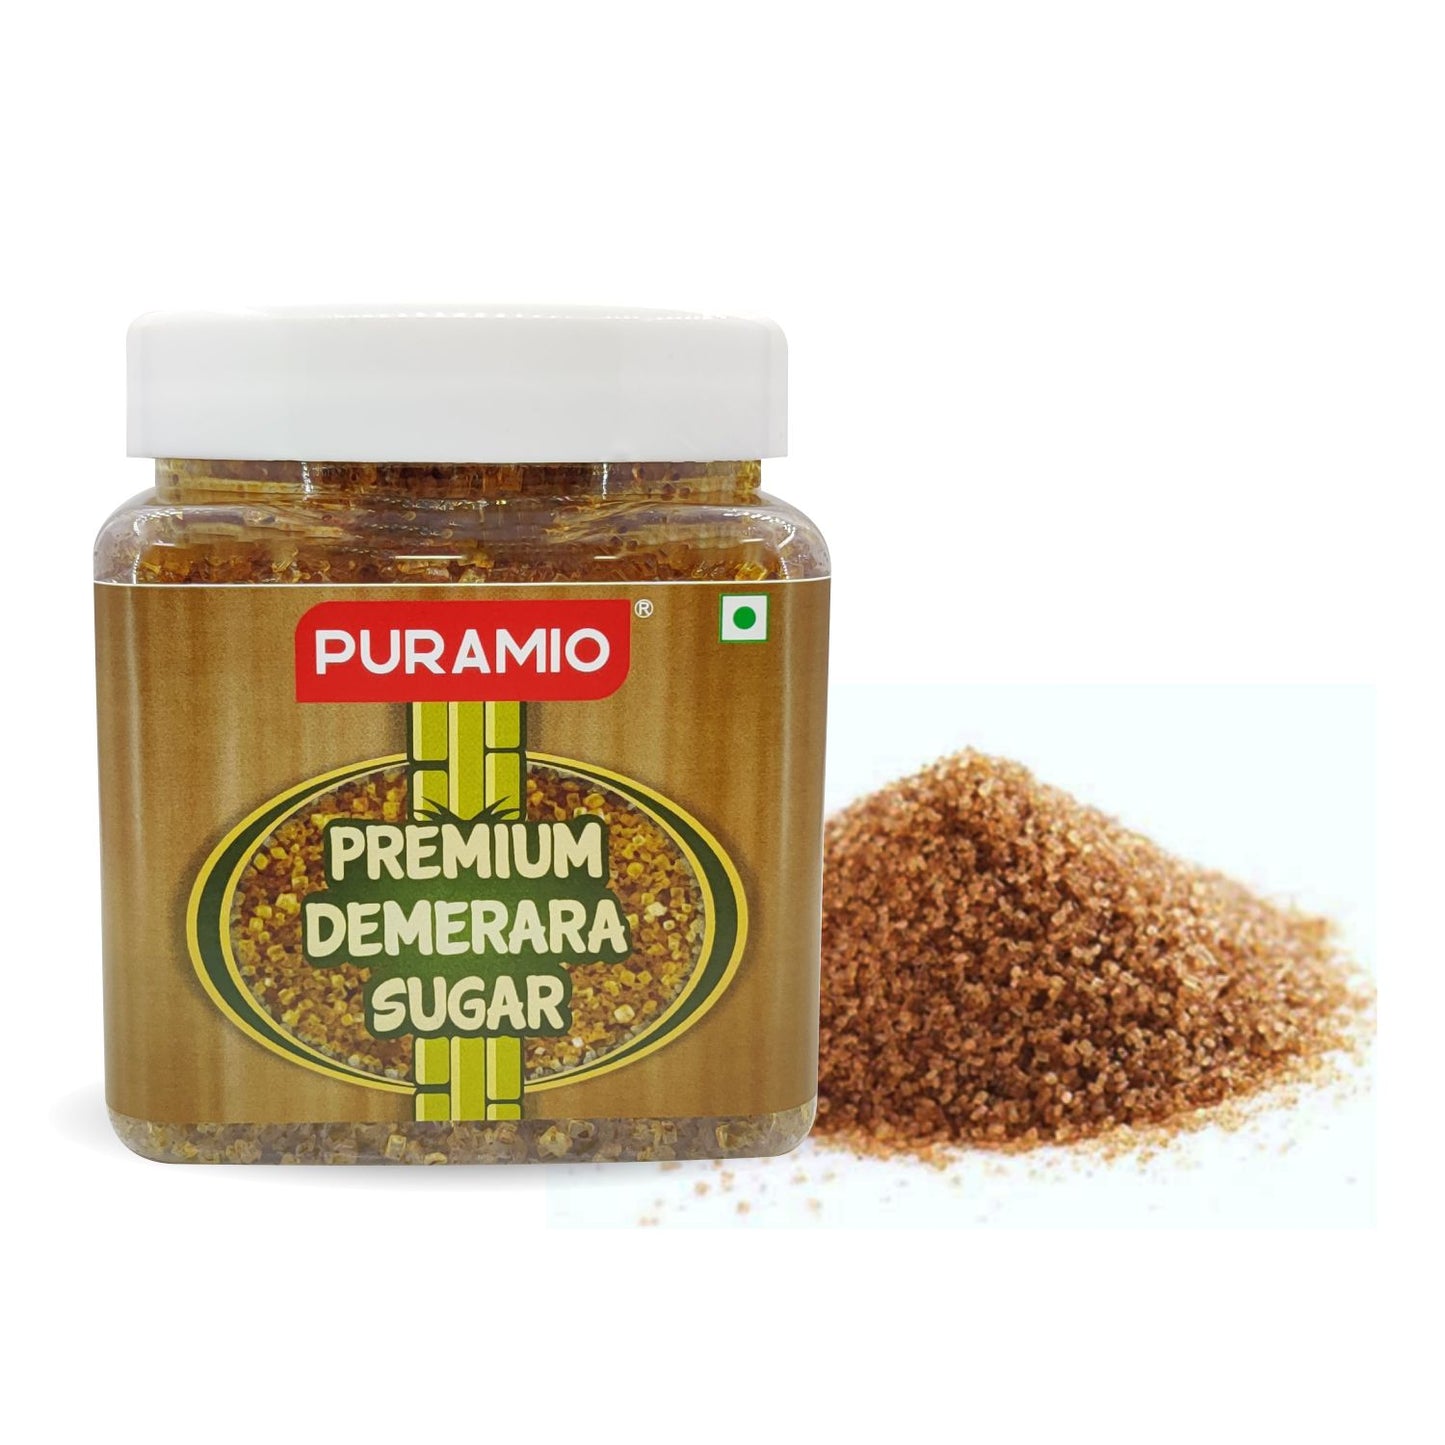 PURAMIO Premium Demerara Sugar